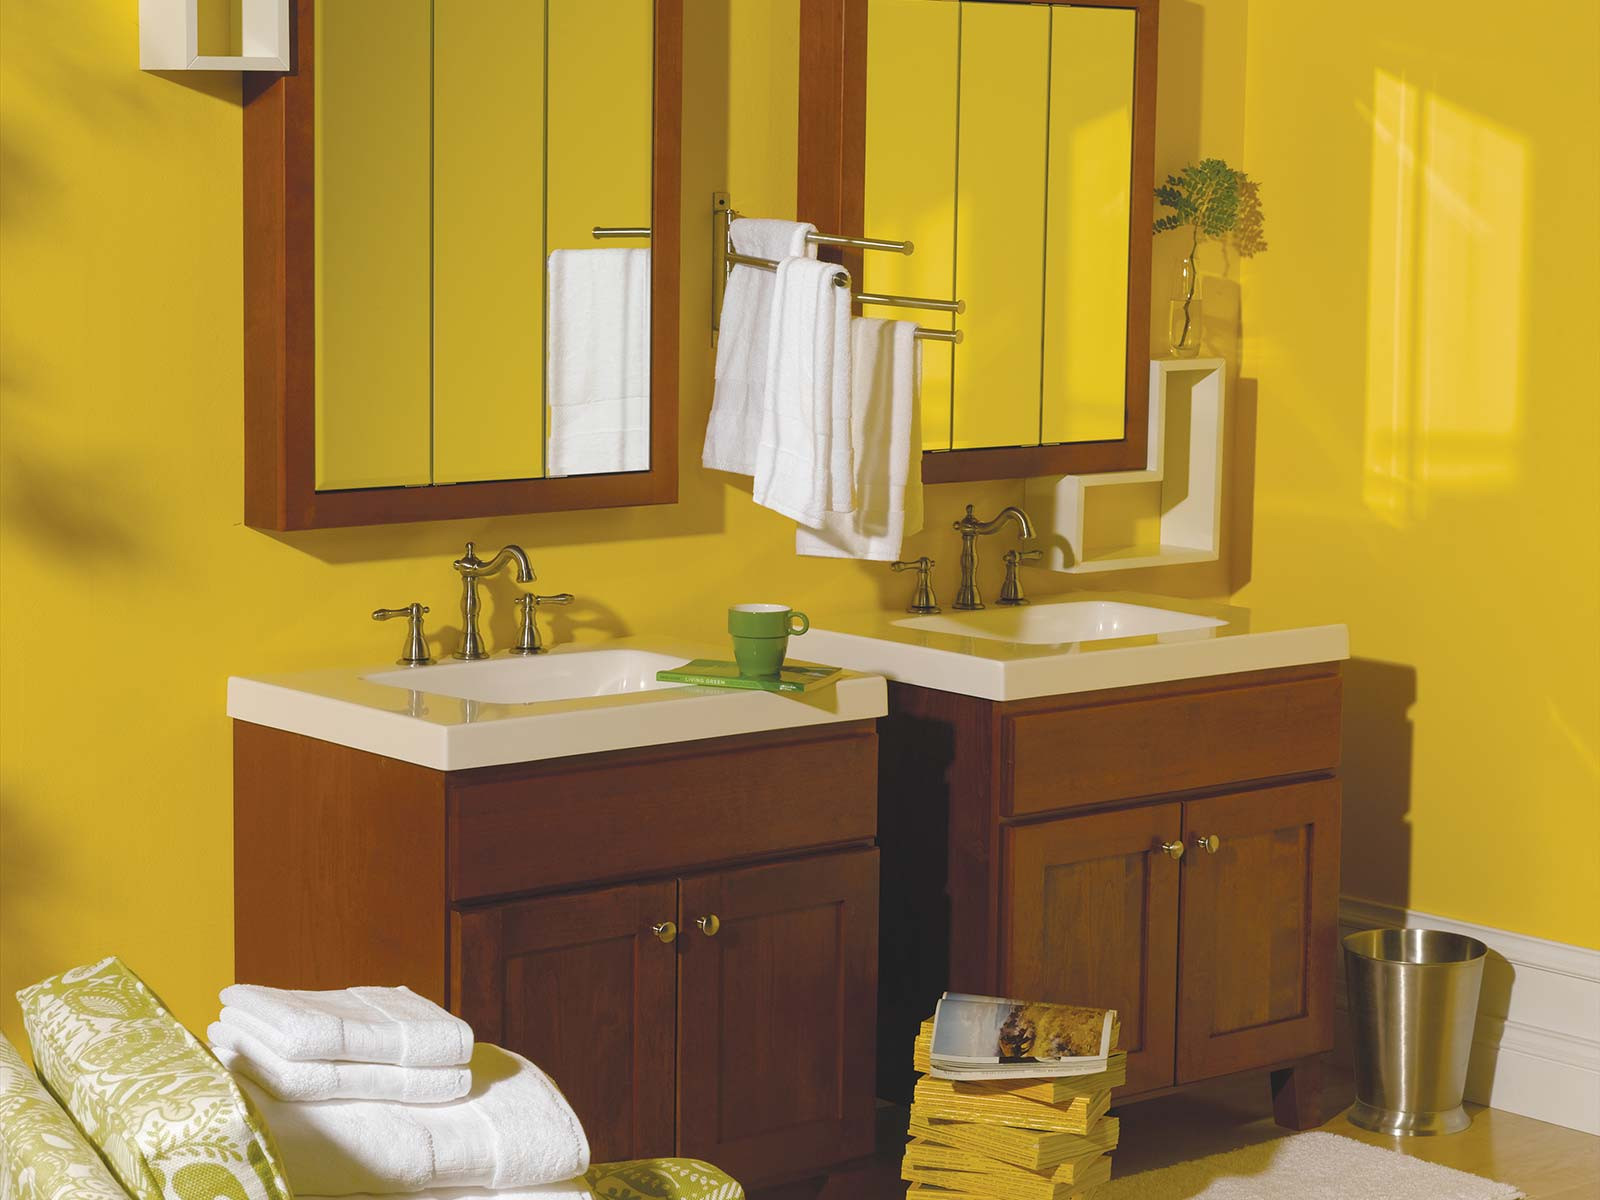 Bertch Bathroom Vanities
 Bathroom Cabinets Vanity Tops Shower Surrounds Bertch